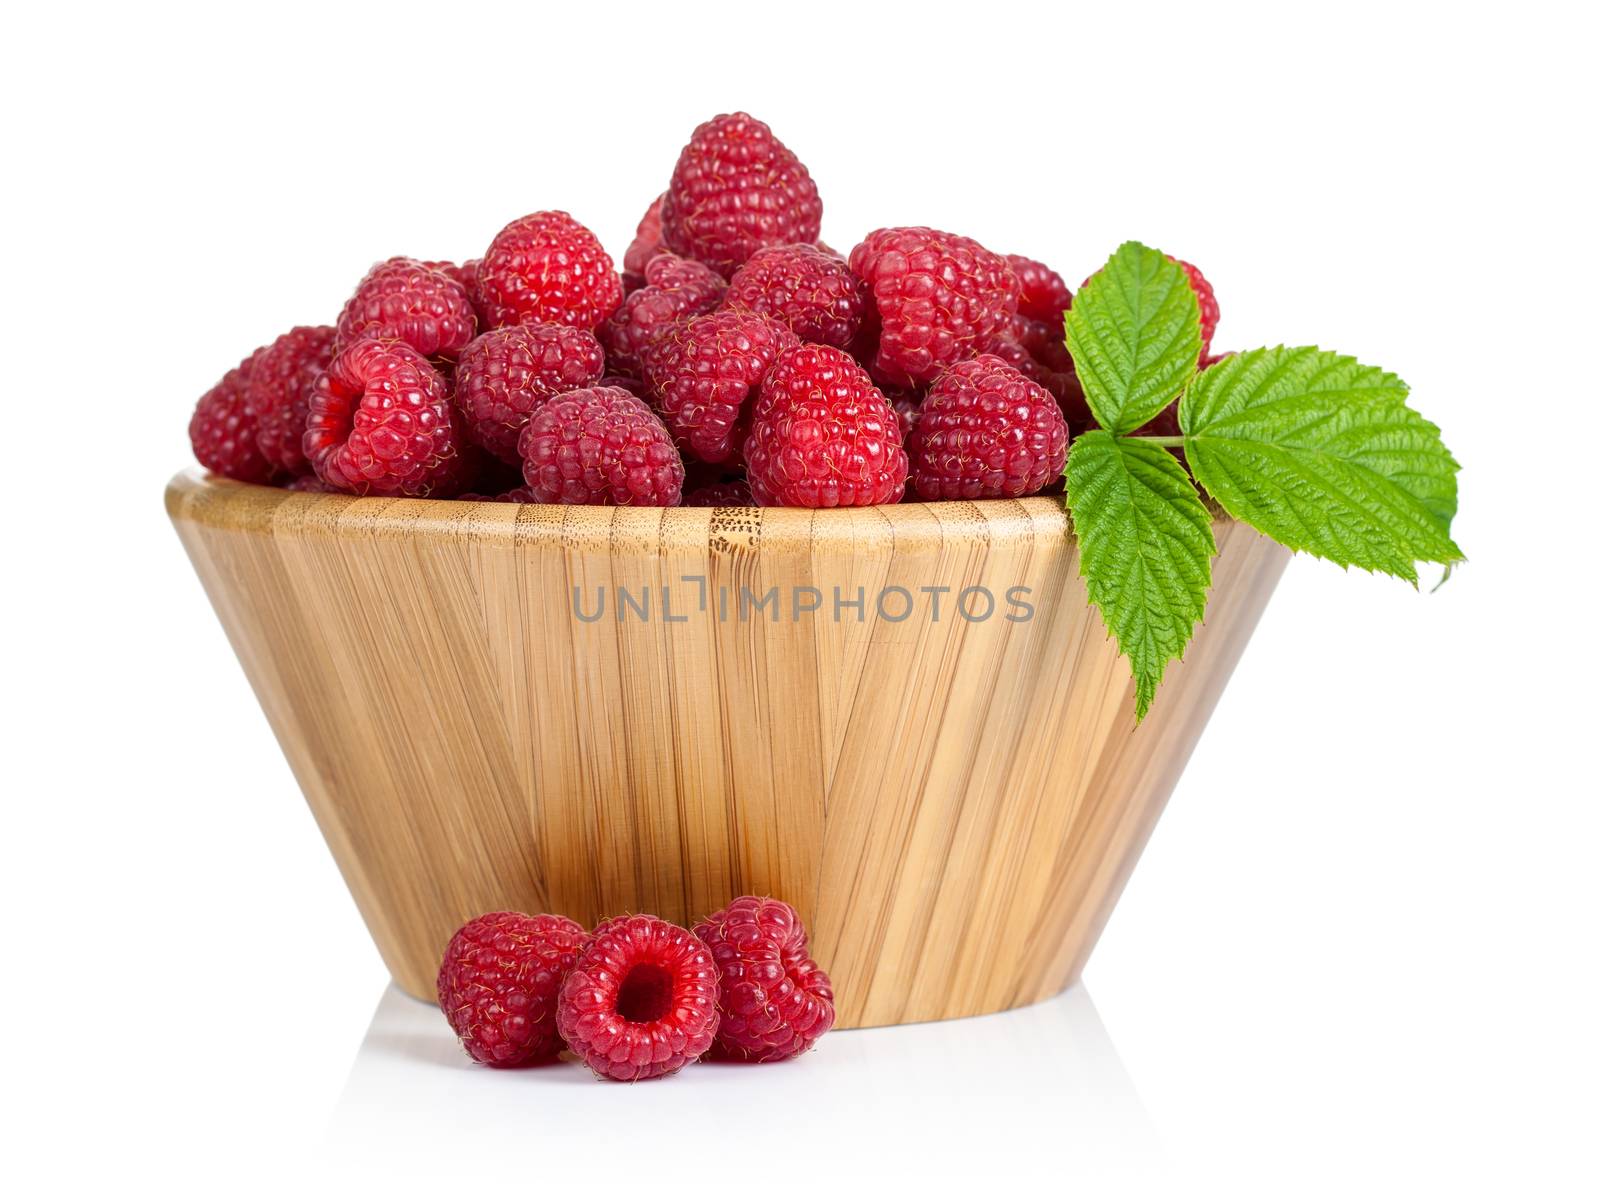 Raspberries by bozena_fulawka